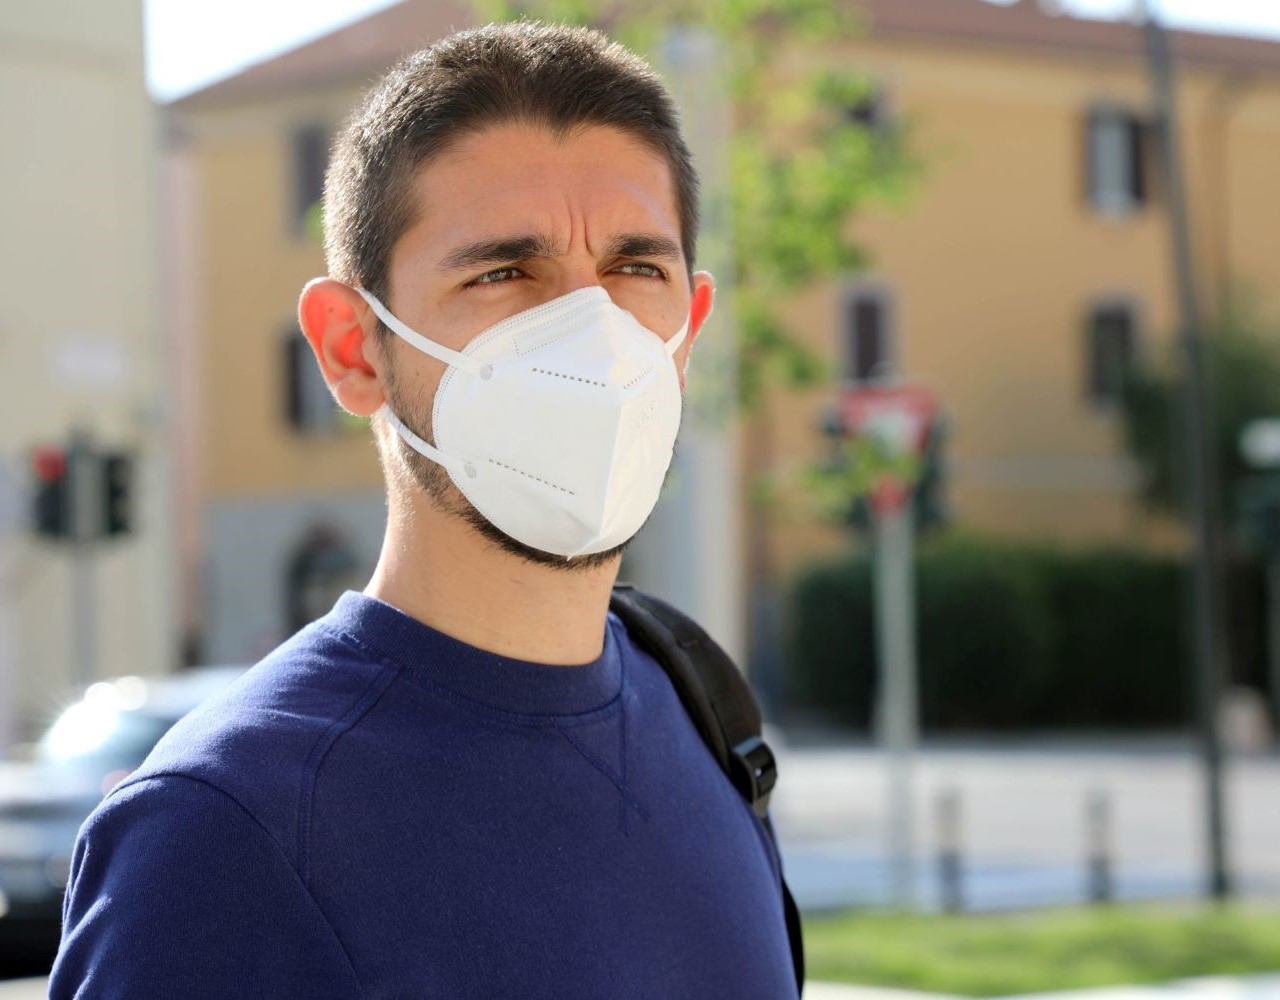 Ο Ιατρικός Σύλλογος Αθηνών αναφέρει τα 7 κύρια μέτρα προστασίας για τον κορονοϊό